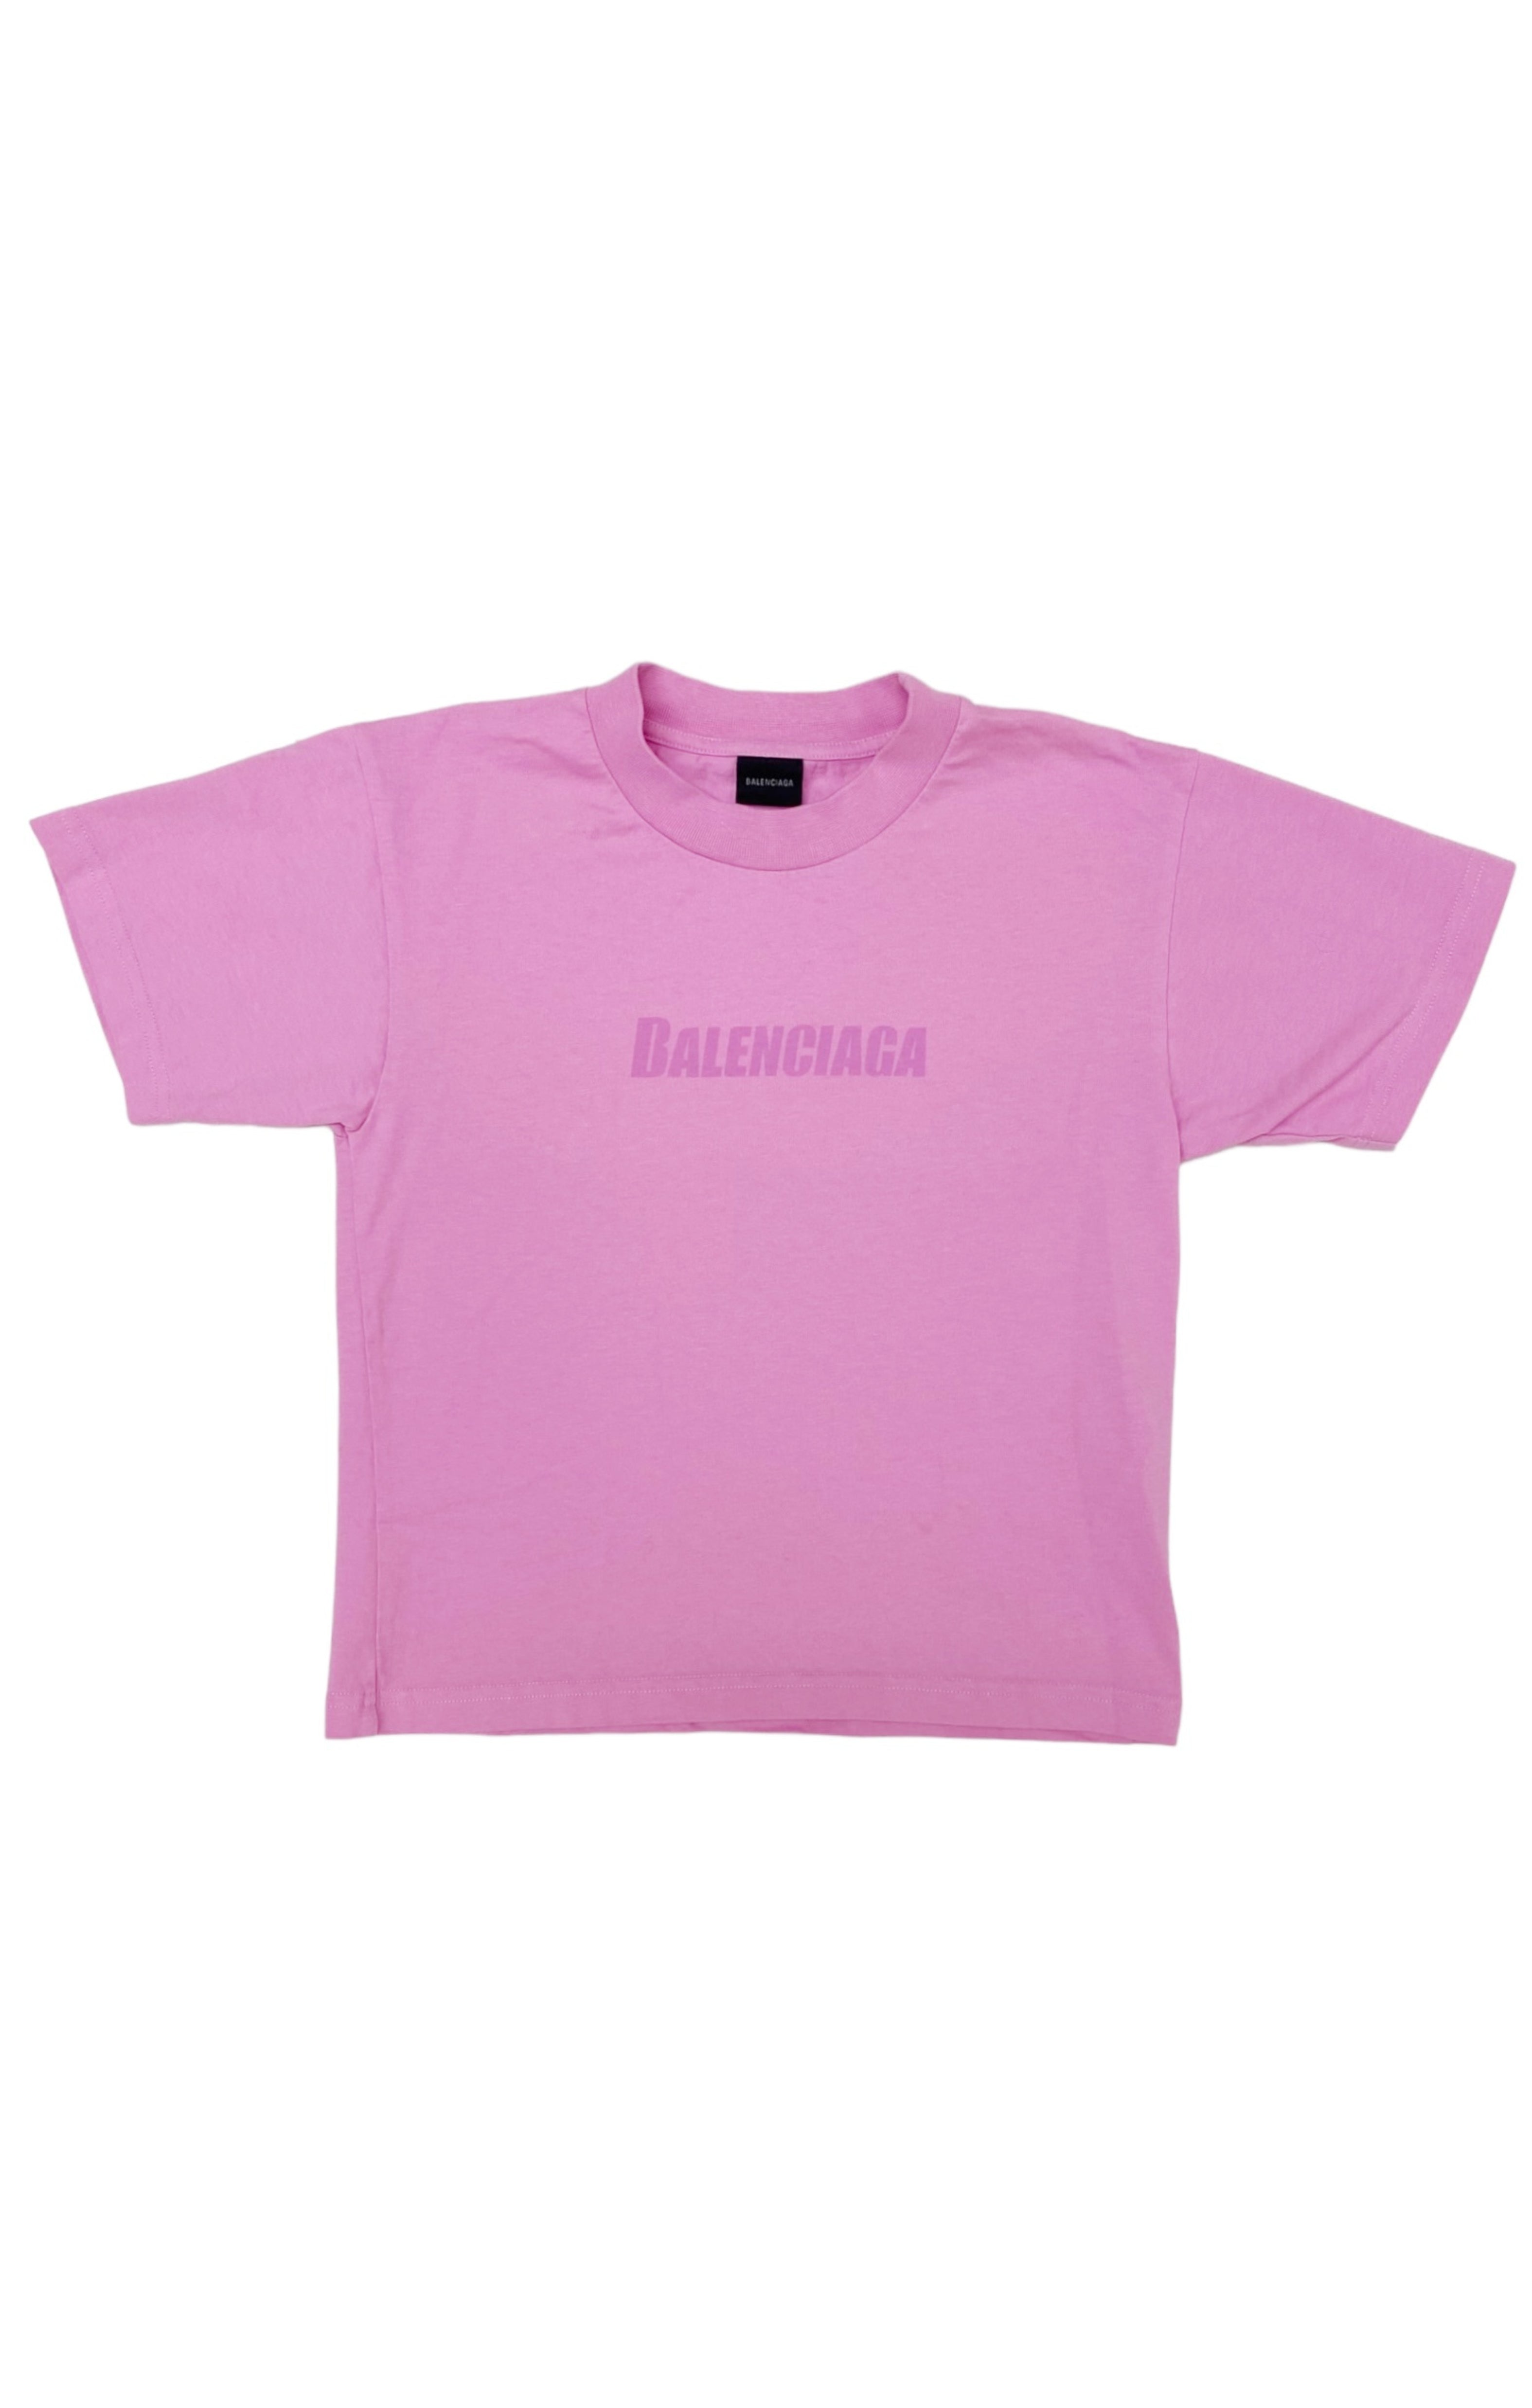 BALENCIAGA KIDS T-shirt Size: 8 Years